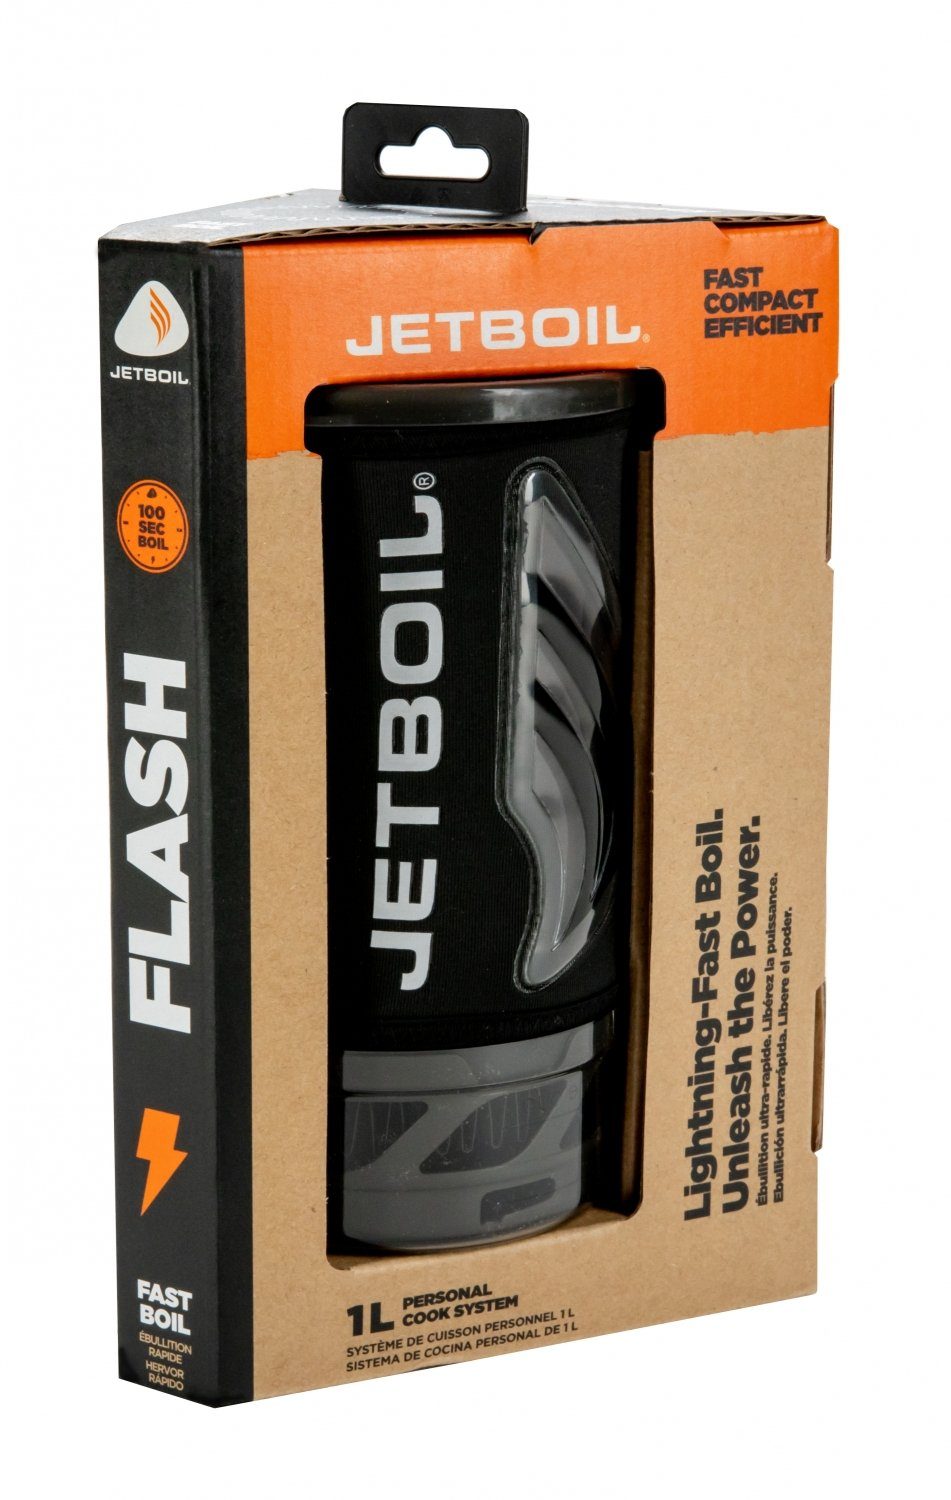 Jetboil Kochsystem Flash Gaskocher All-in-one Jetboil